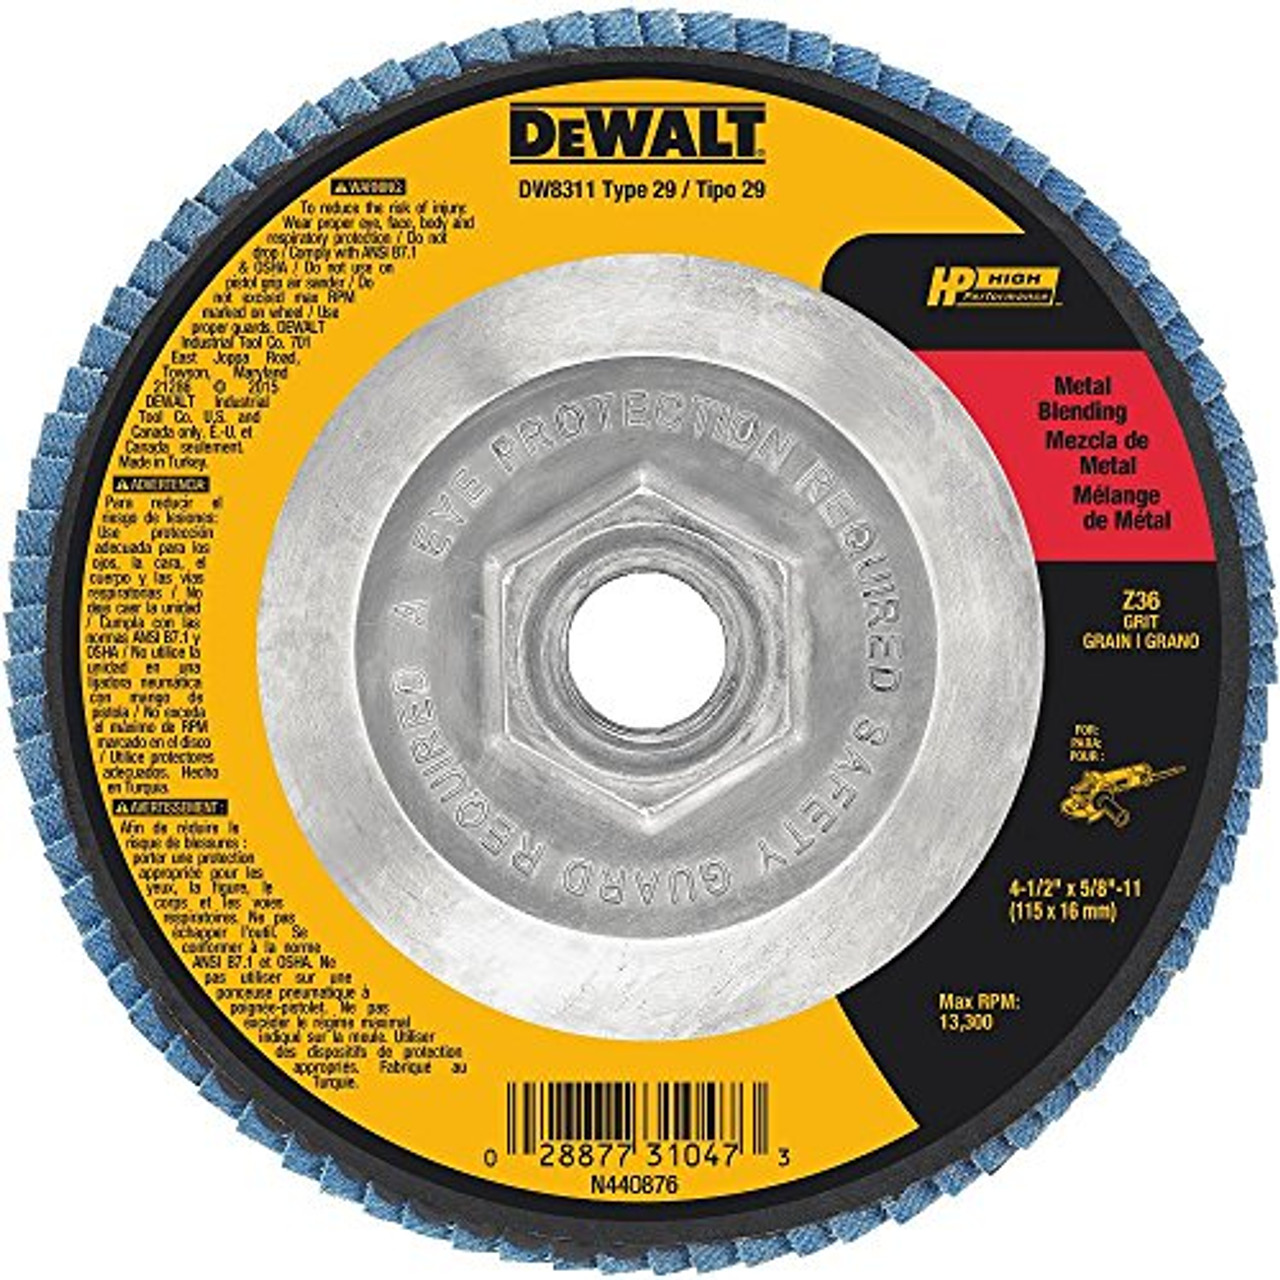 DEWALT DW8311 4-1/2-Inch by 5/8-Inch-11 36 Grit Zirconia Angle Grinder Flap Disc